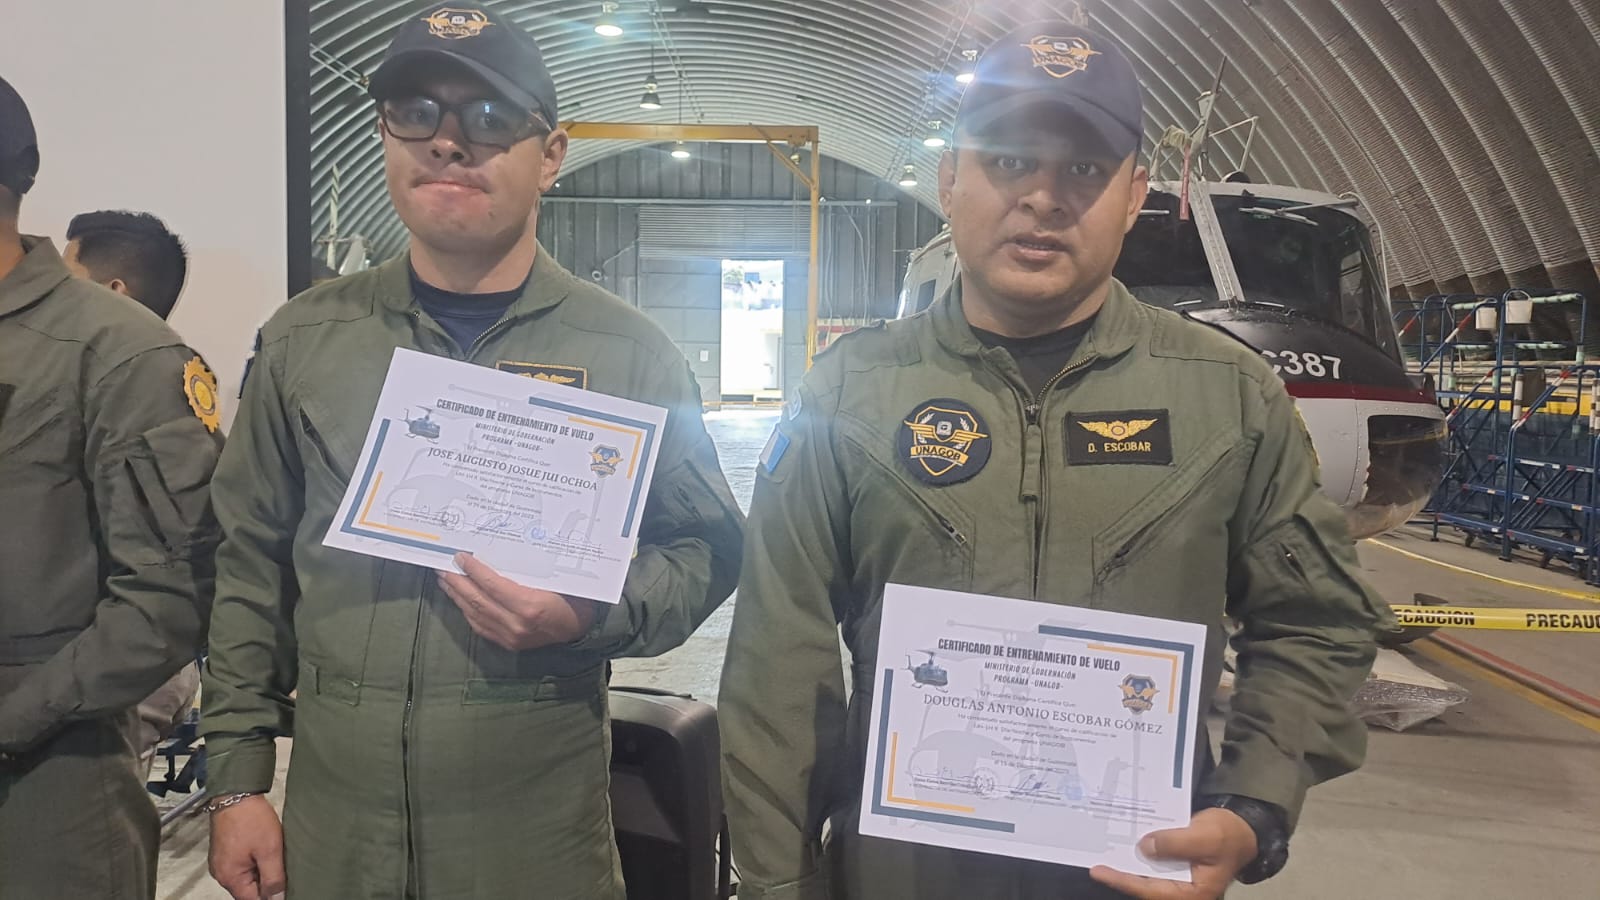 Agenes PNC son certificados como pilotos aviadores